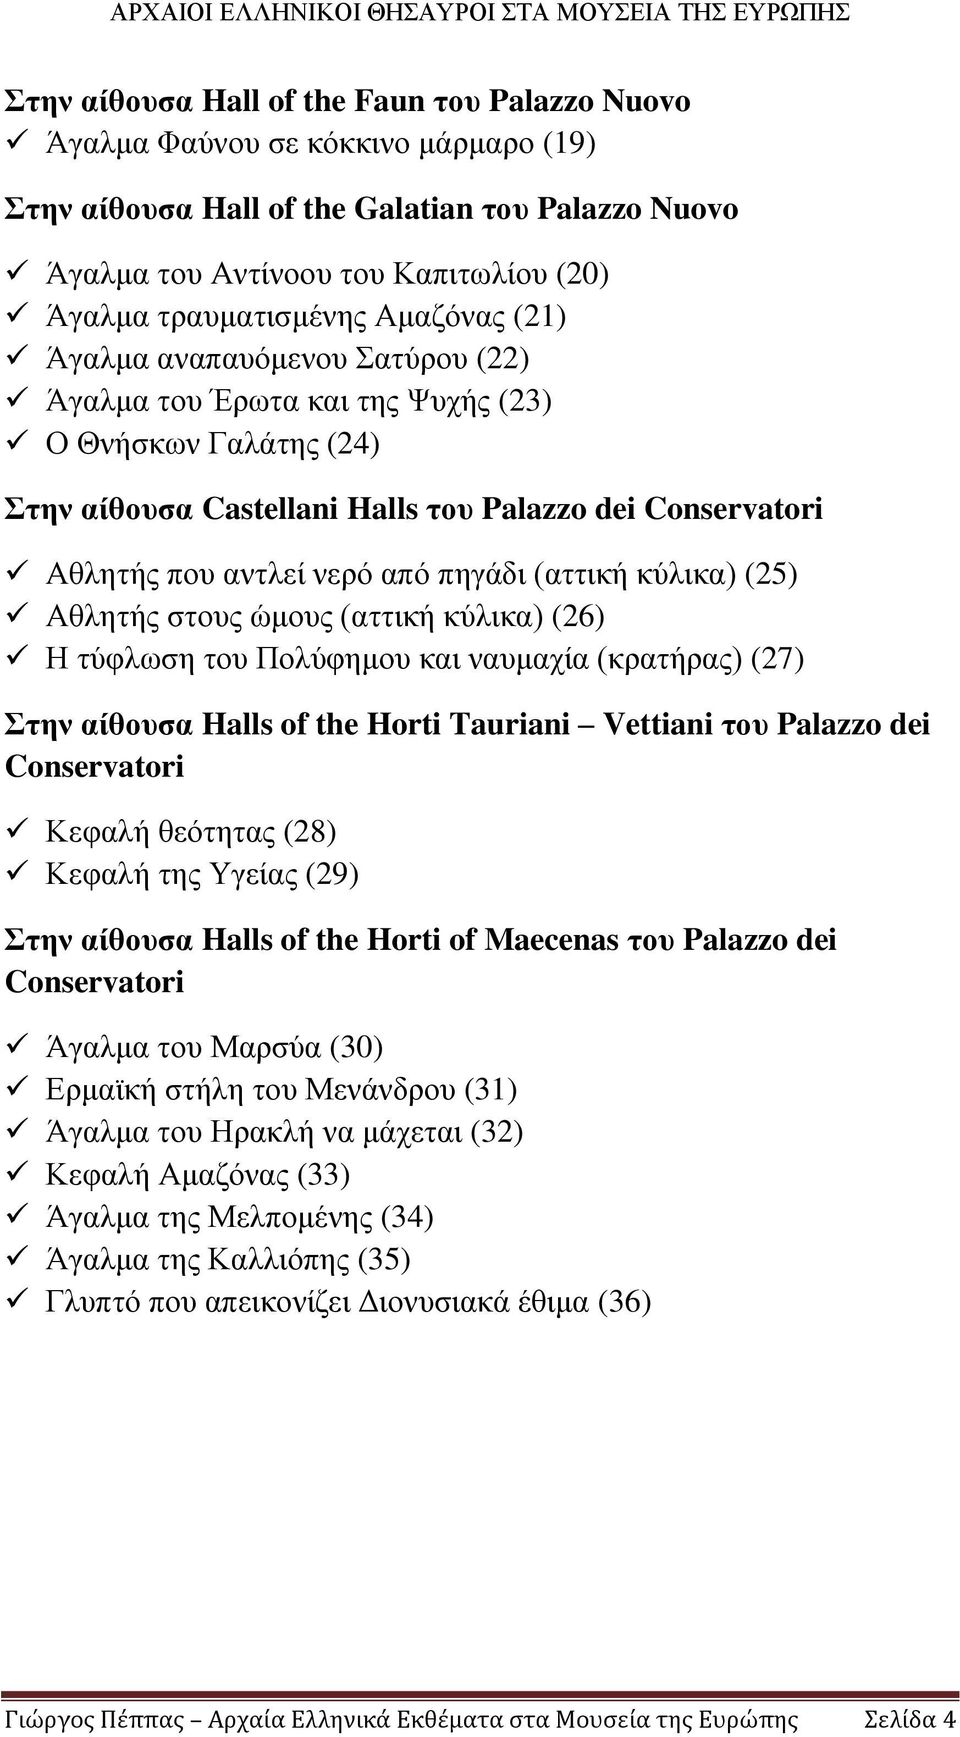 (αττική κύλικα) (25) Αθλητής στους ώμους (αττική κύλικα) (26) Η τύφλωση του Πολύφημου και ναυμαχία (κρατήρας) (27) Στην αίθουσα Halls of the Horti Tauriani Vettiani του Palazzo dei Conservatori